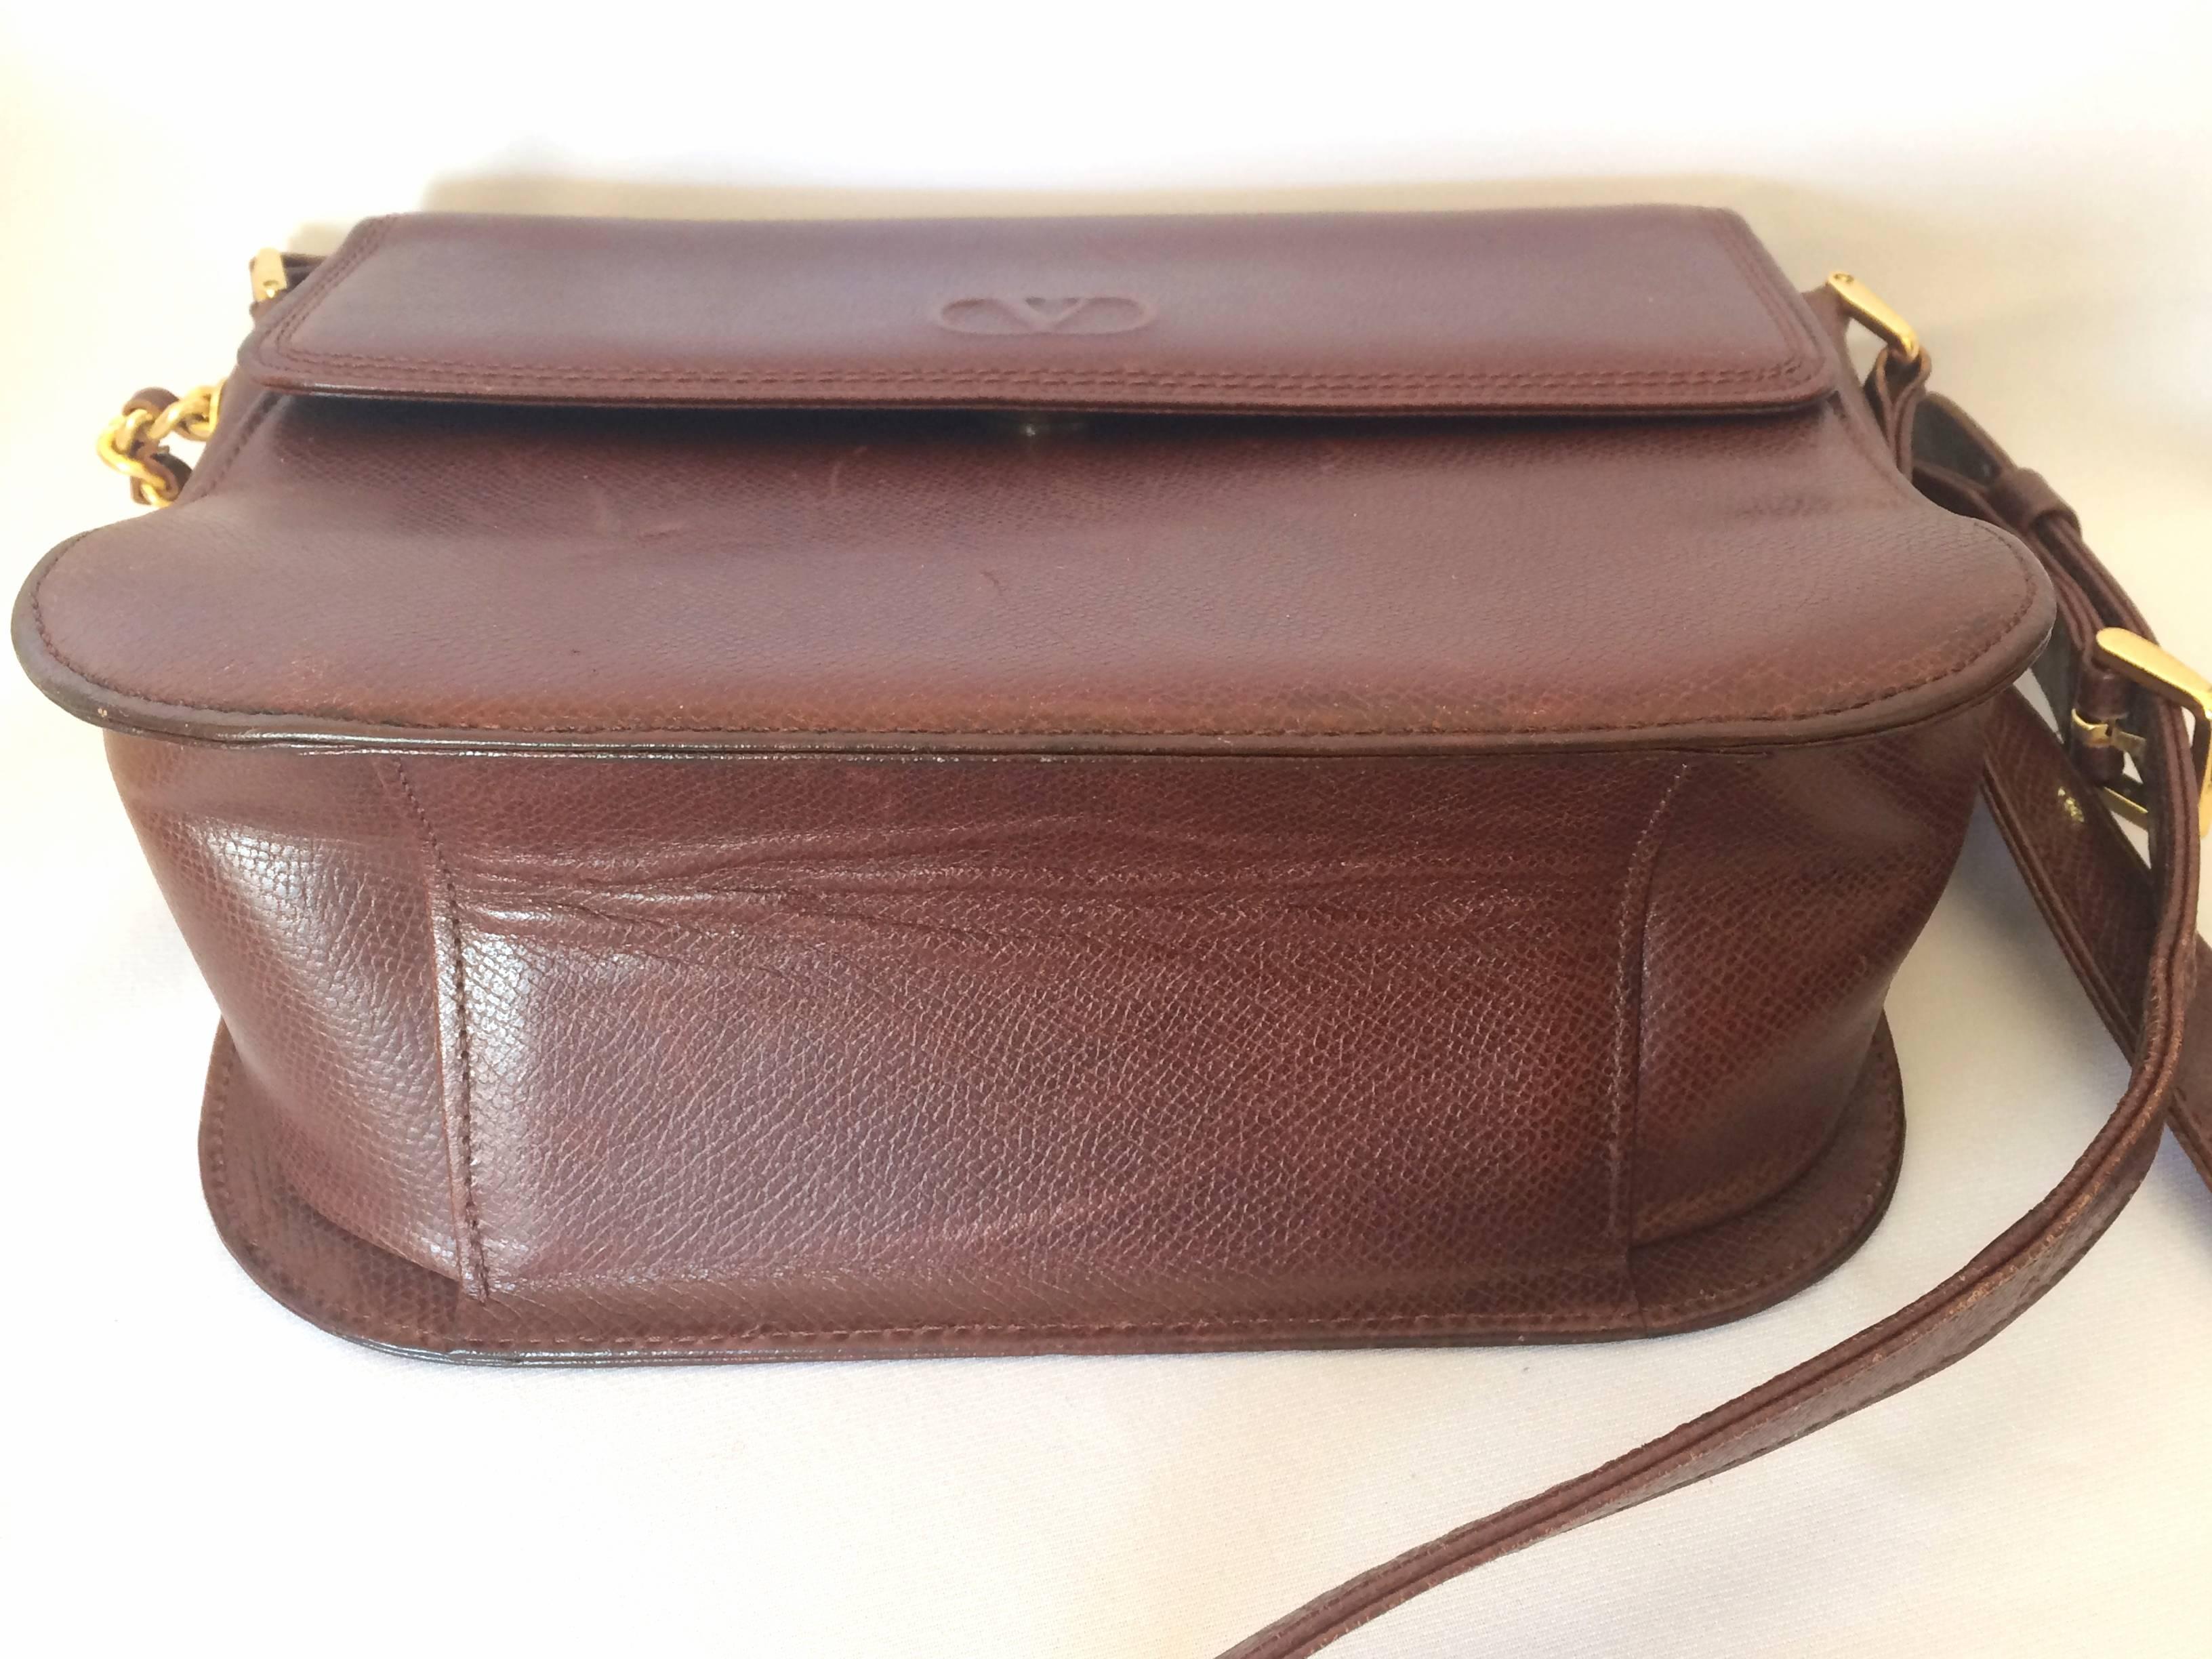 Women's Vintage Valentino Garavani dark brown leather shoulder bag with tassel charm.